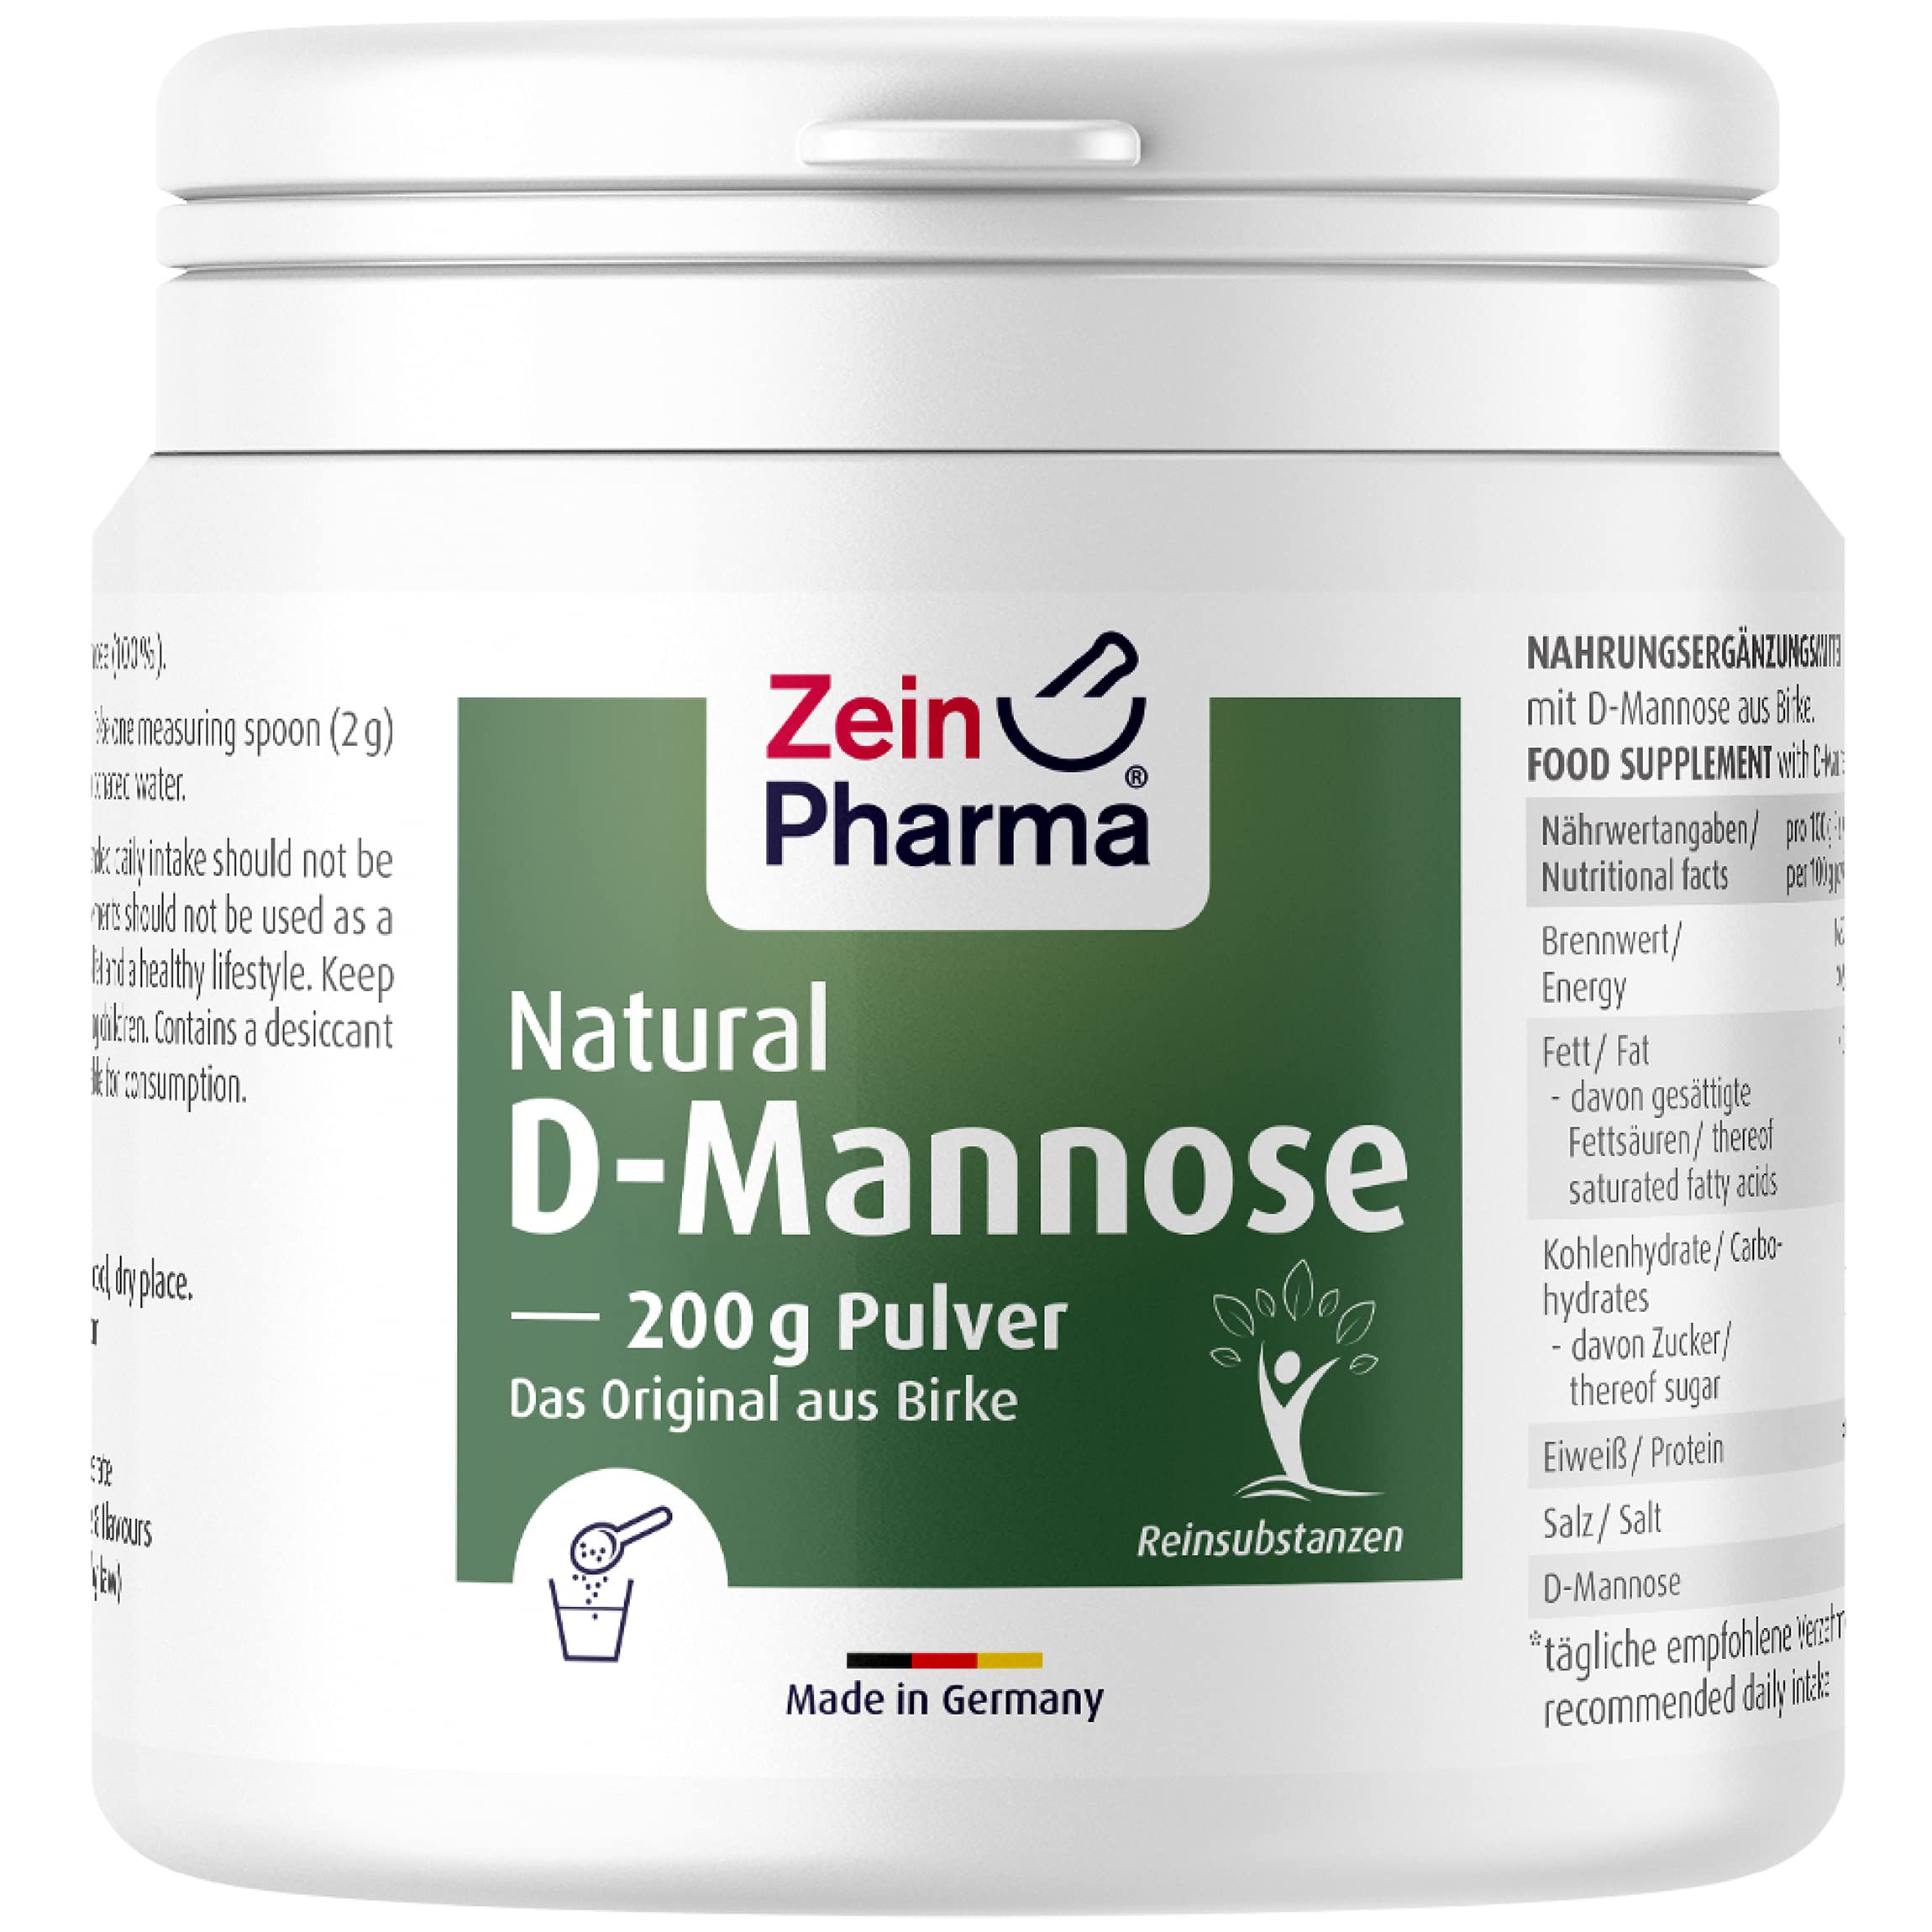 ZeinPharma Natural D-Mannose Pulver 200 g - D-Mannose Pulver aus Birke, rein und ohne Zusätze, optimal dosiert, Nahrungsergänzungsmittel vegan,